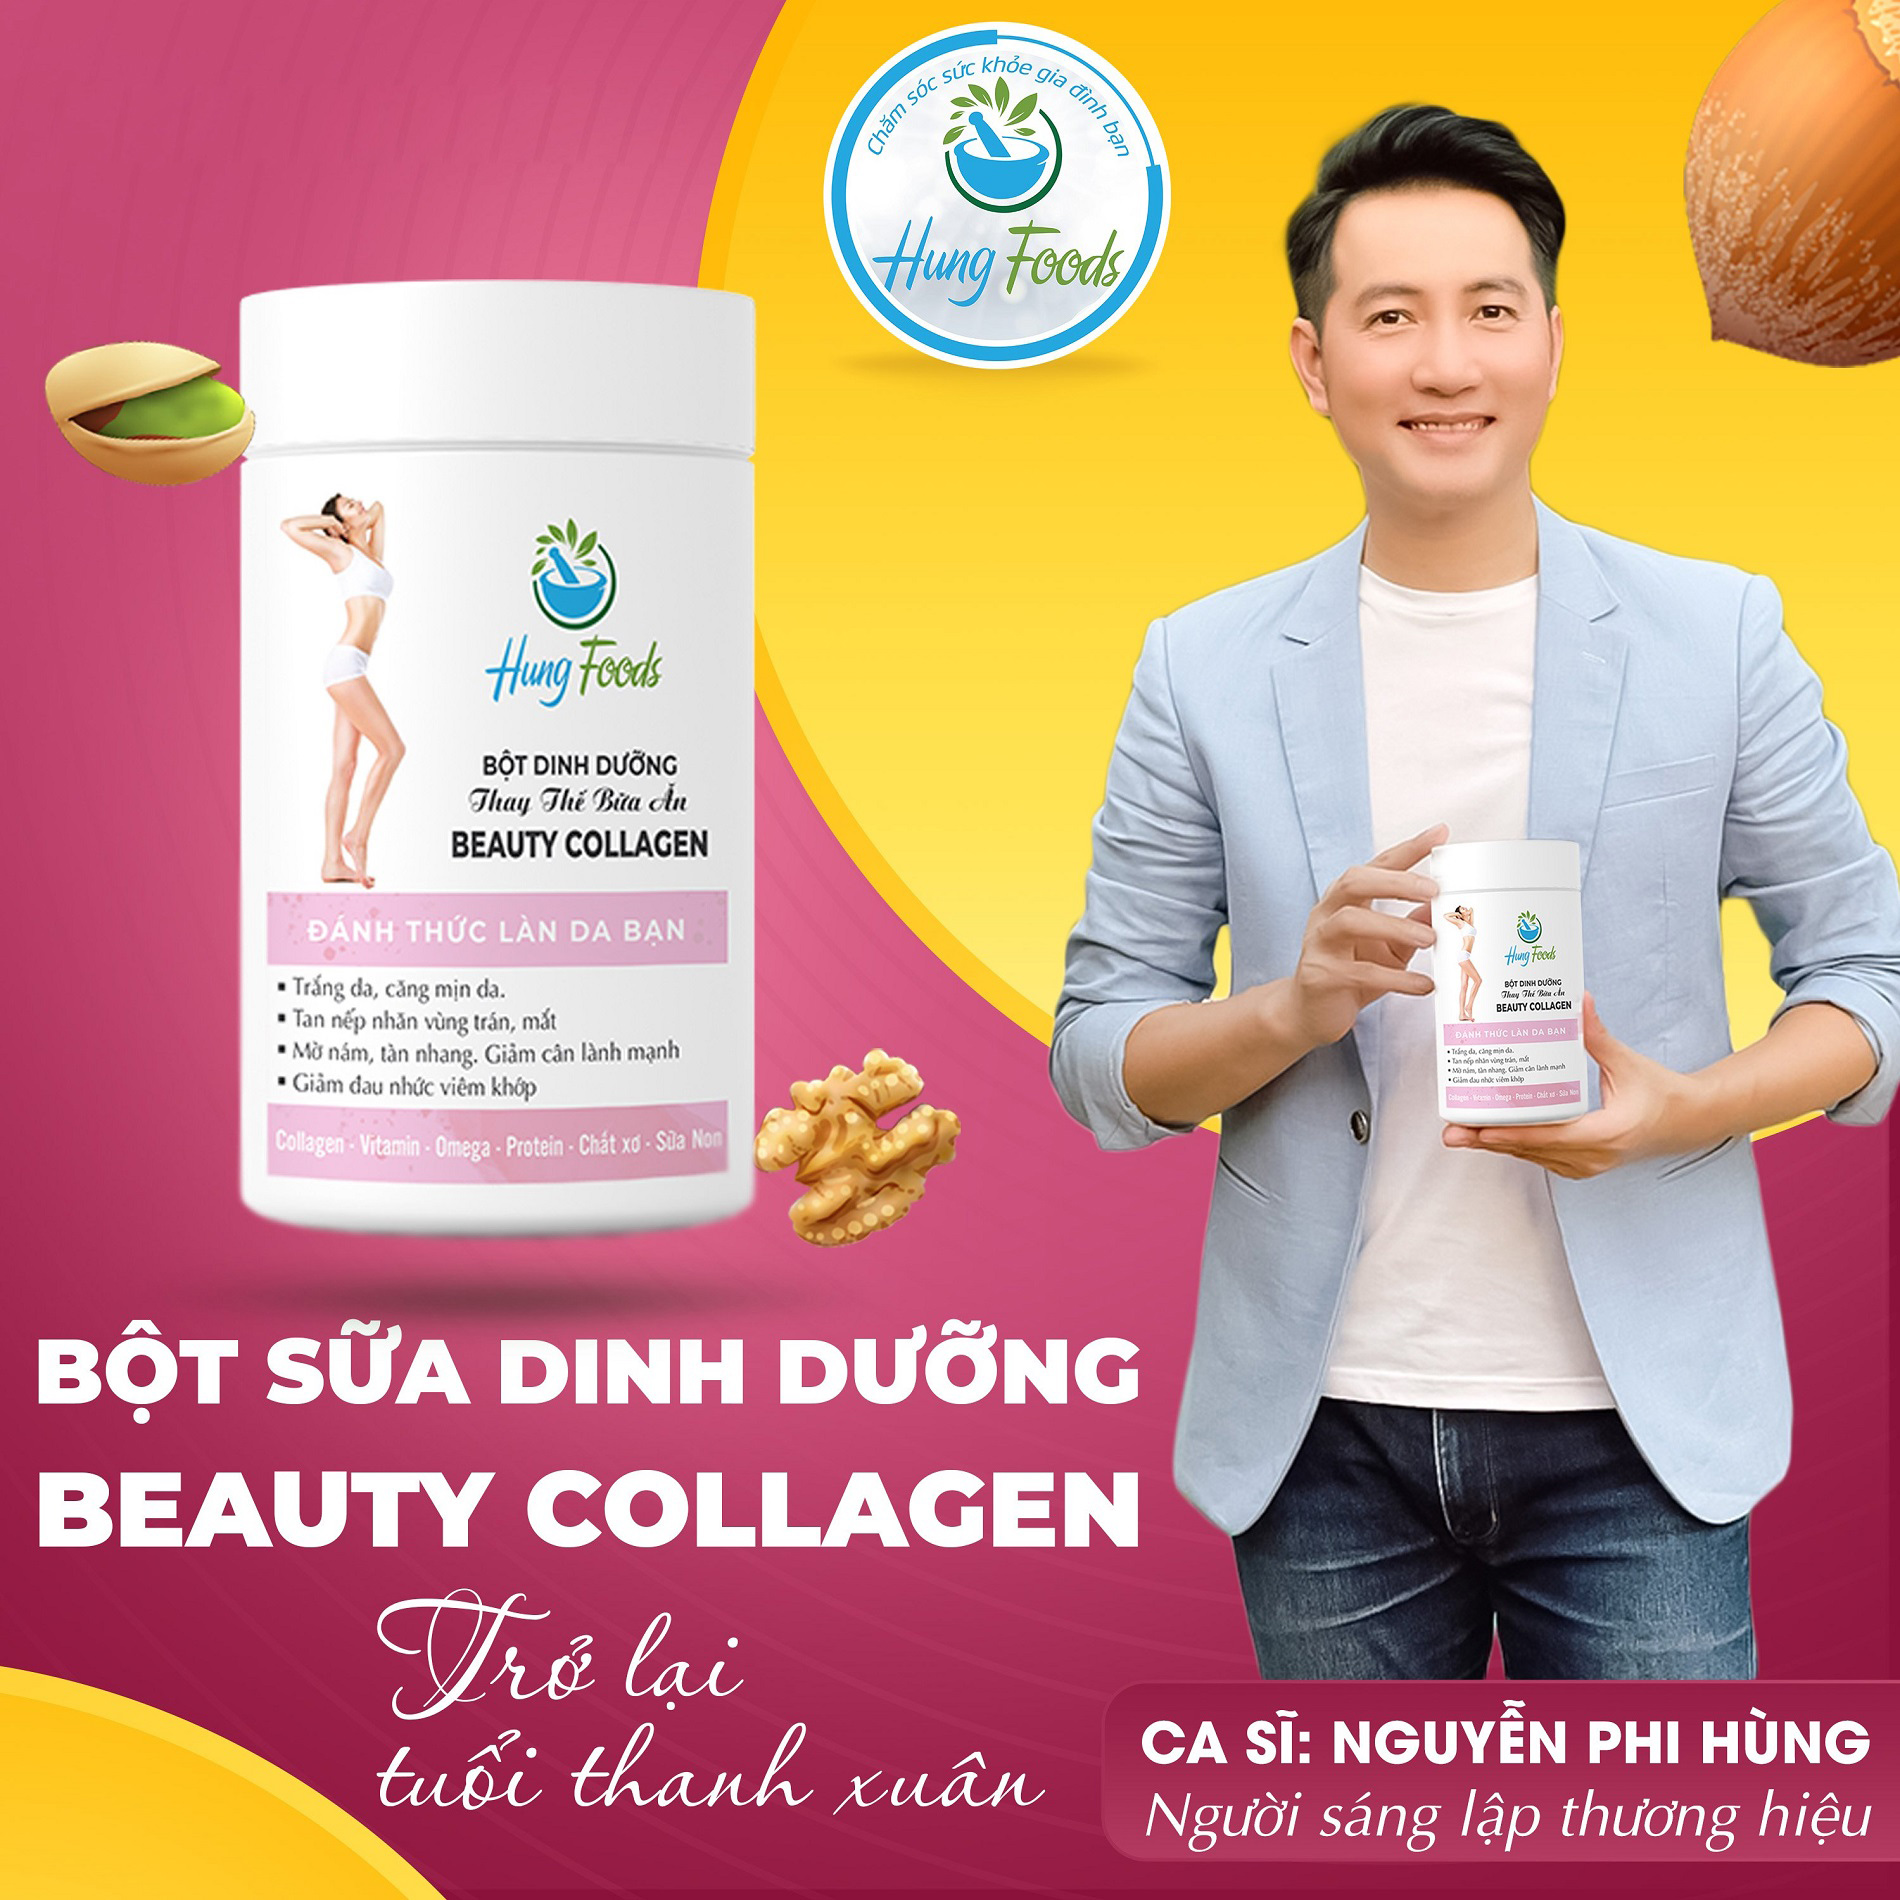 Bột Sữa Beauty Collagen, Dinh Dưỡng Cho Phái Đẹp 500g, Trắng Da, Đẹp Da, Giảm Cân - Chính Hãng Hung Foods thumbnail